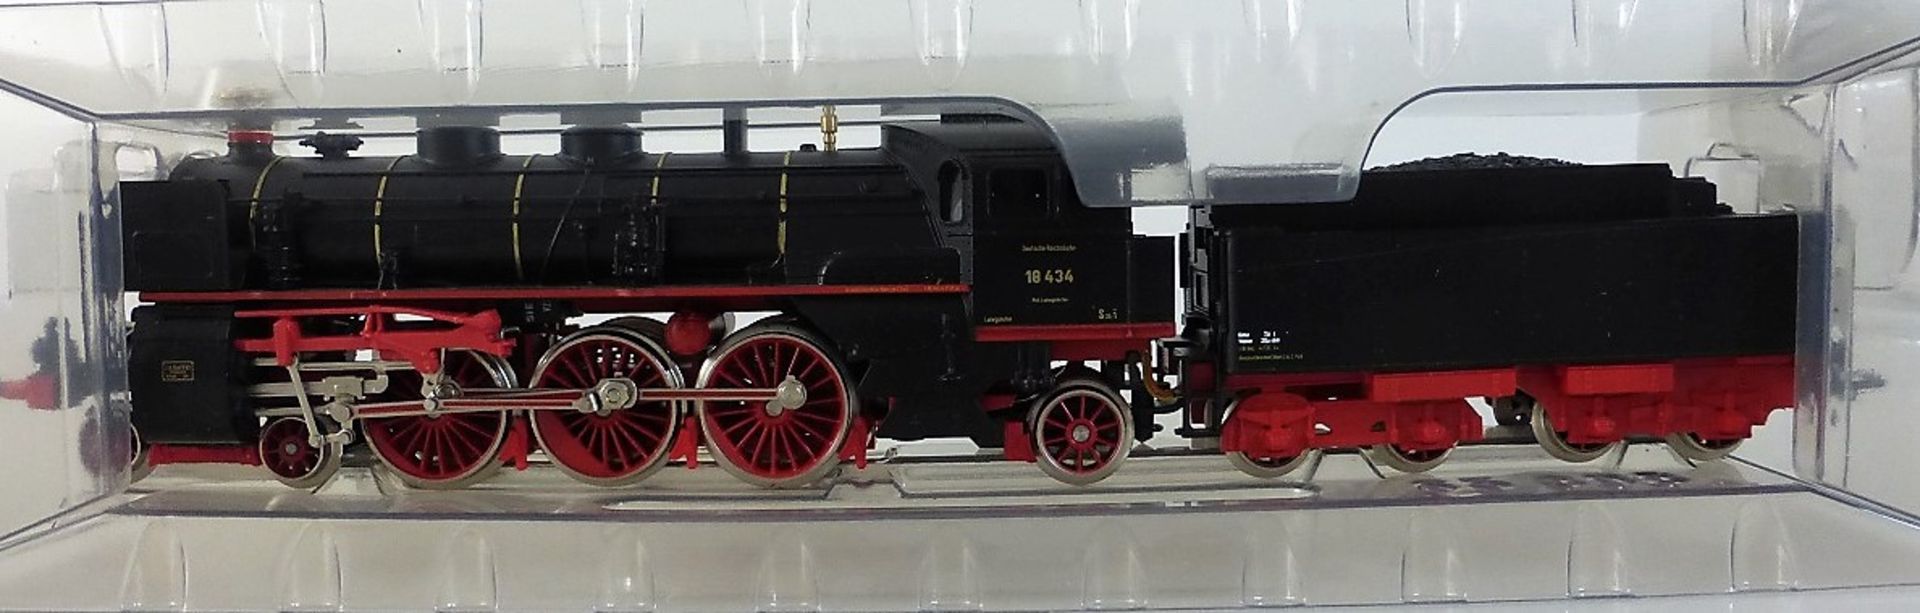 Märklin Lokomotive 3318 - Bild 2 aus 2